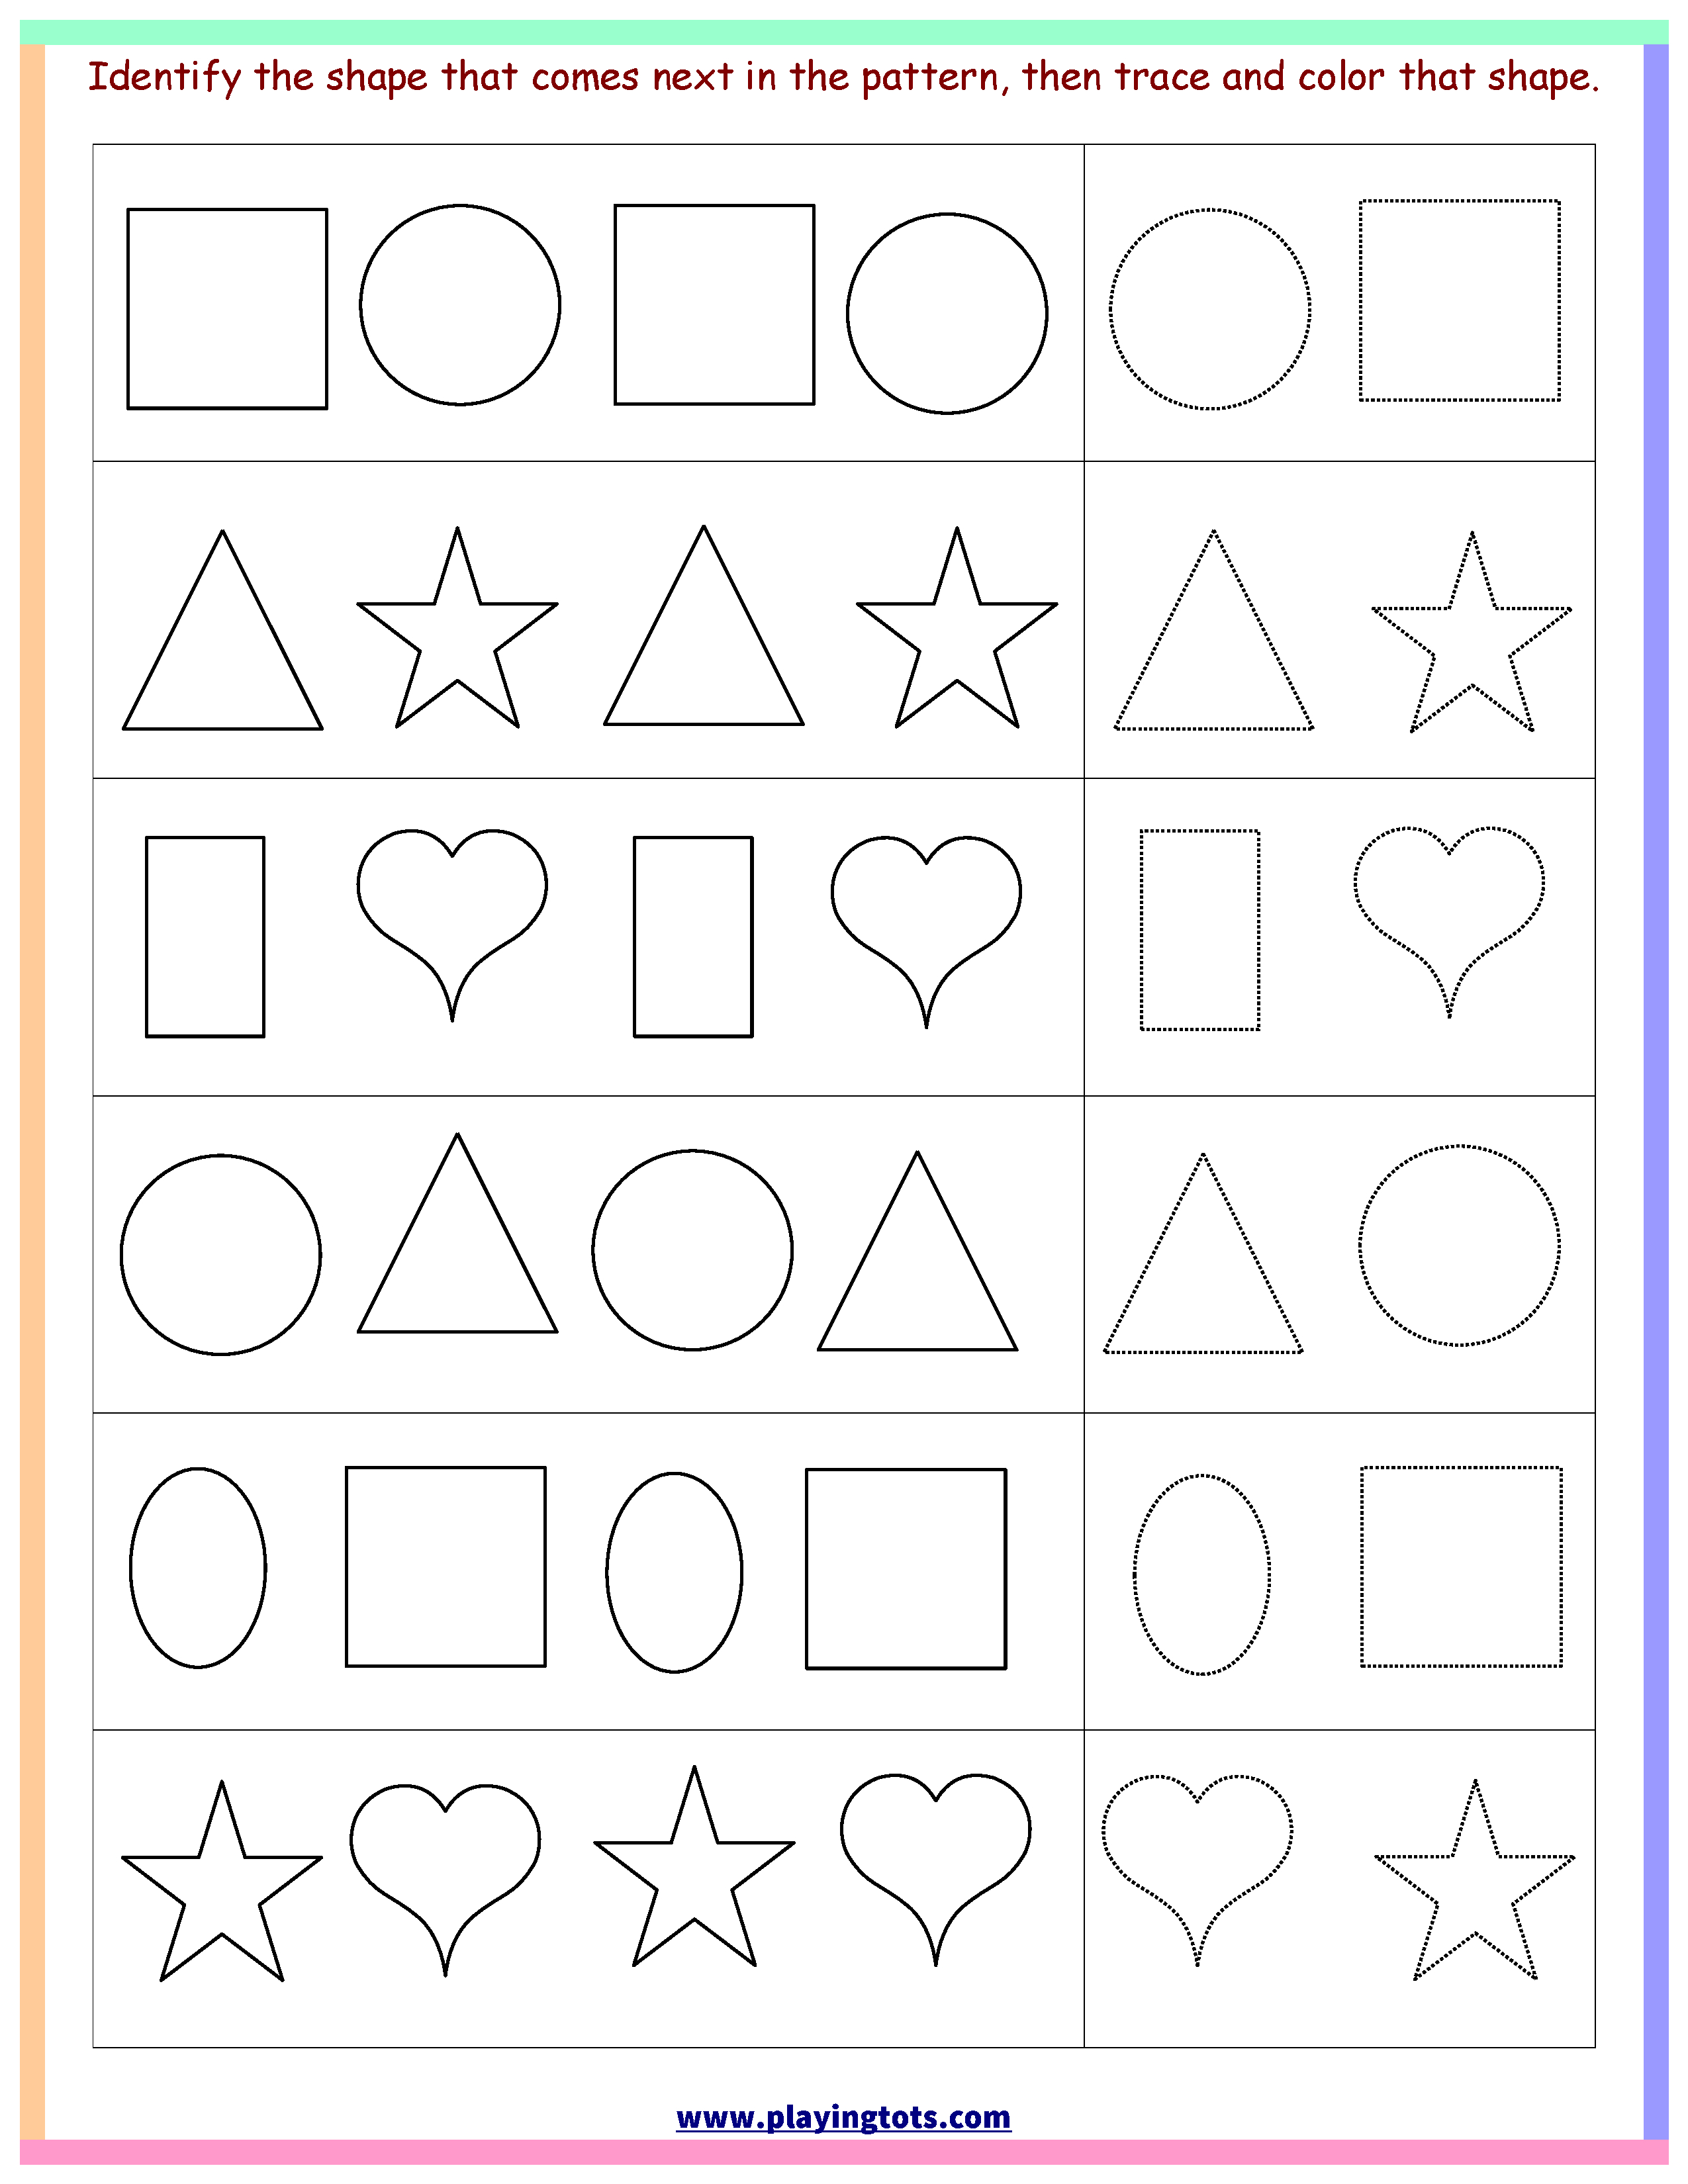 Worksheet,shapes,trace,color,pattern,free,printable,kids,toddler - Free Printable Toddler Learning Worksheets